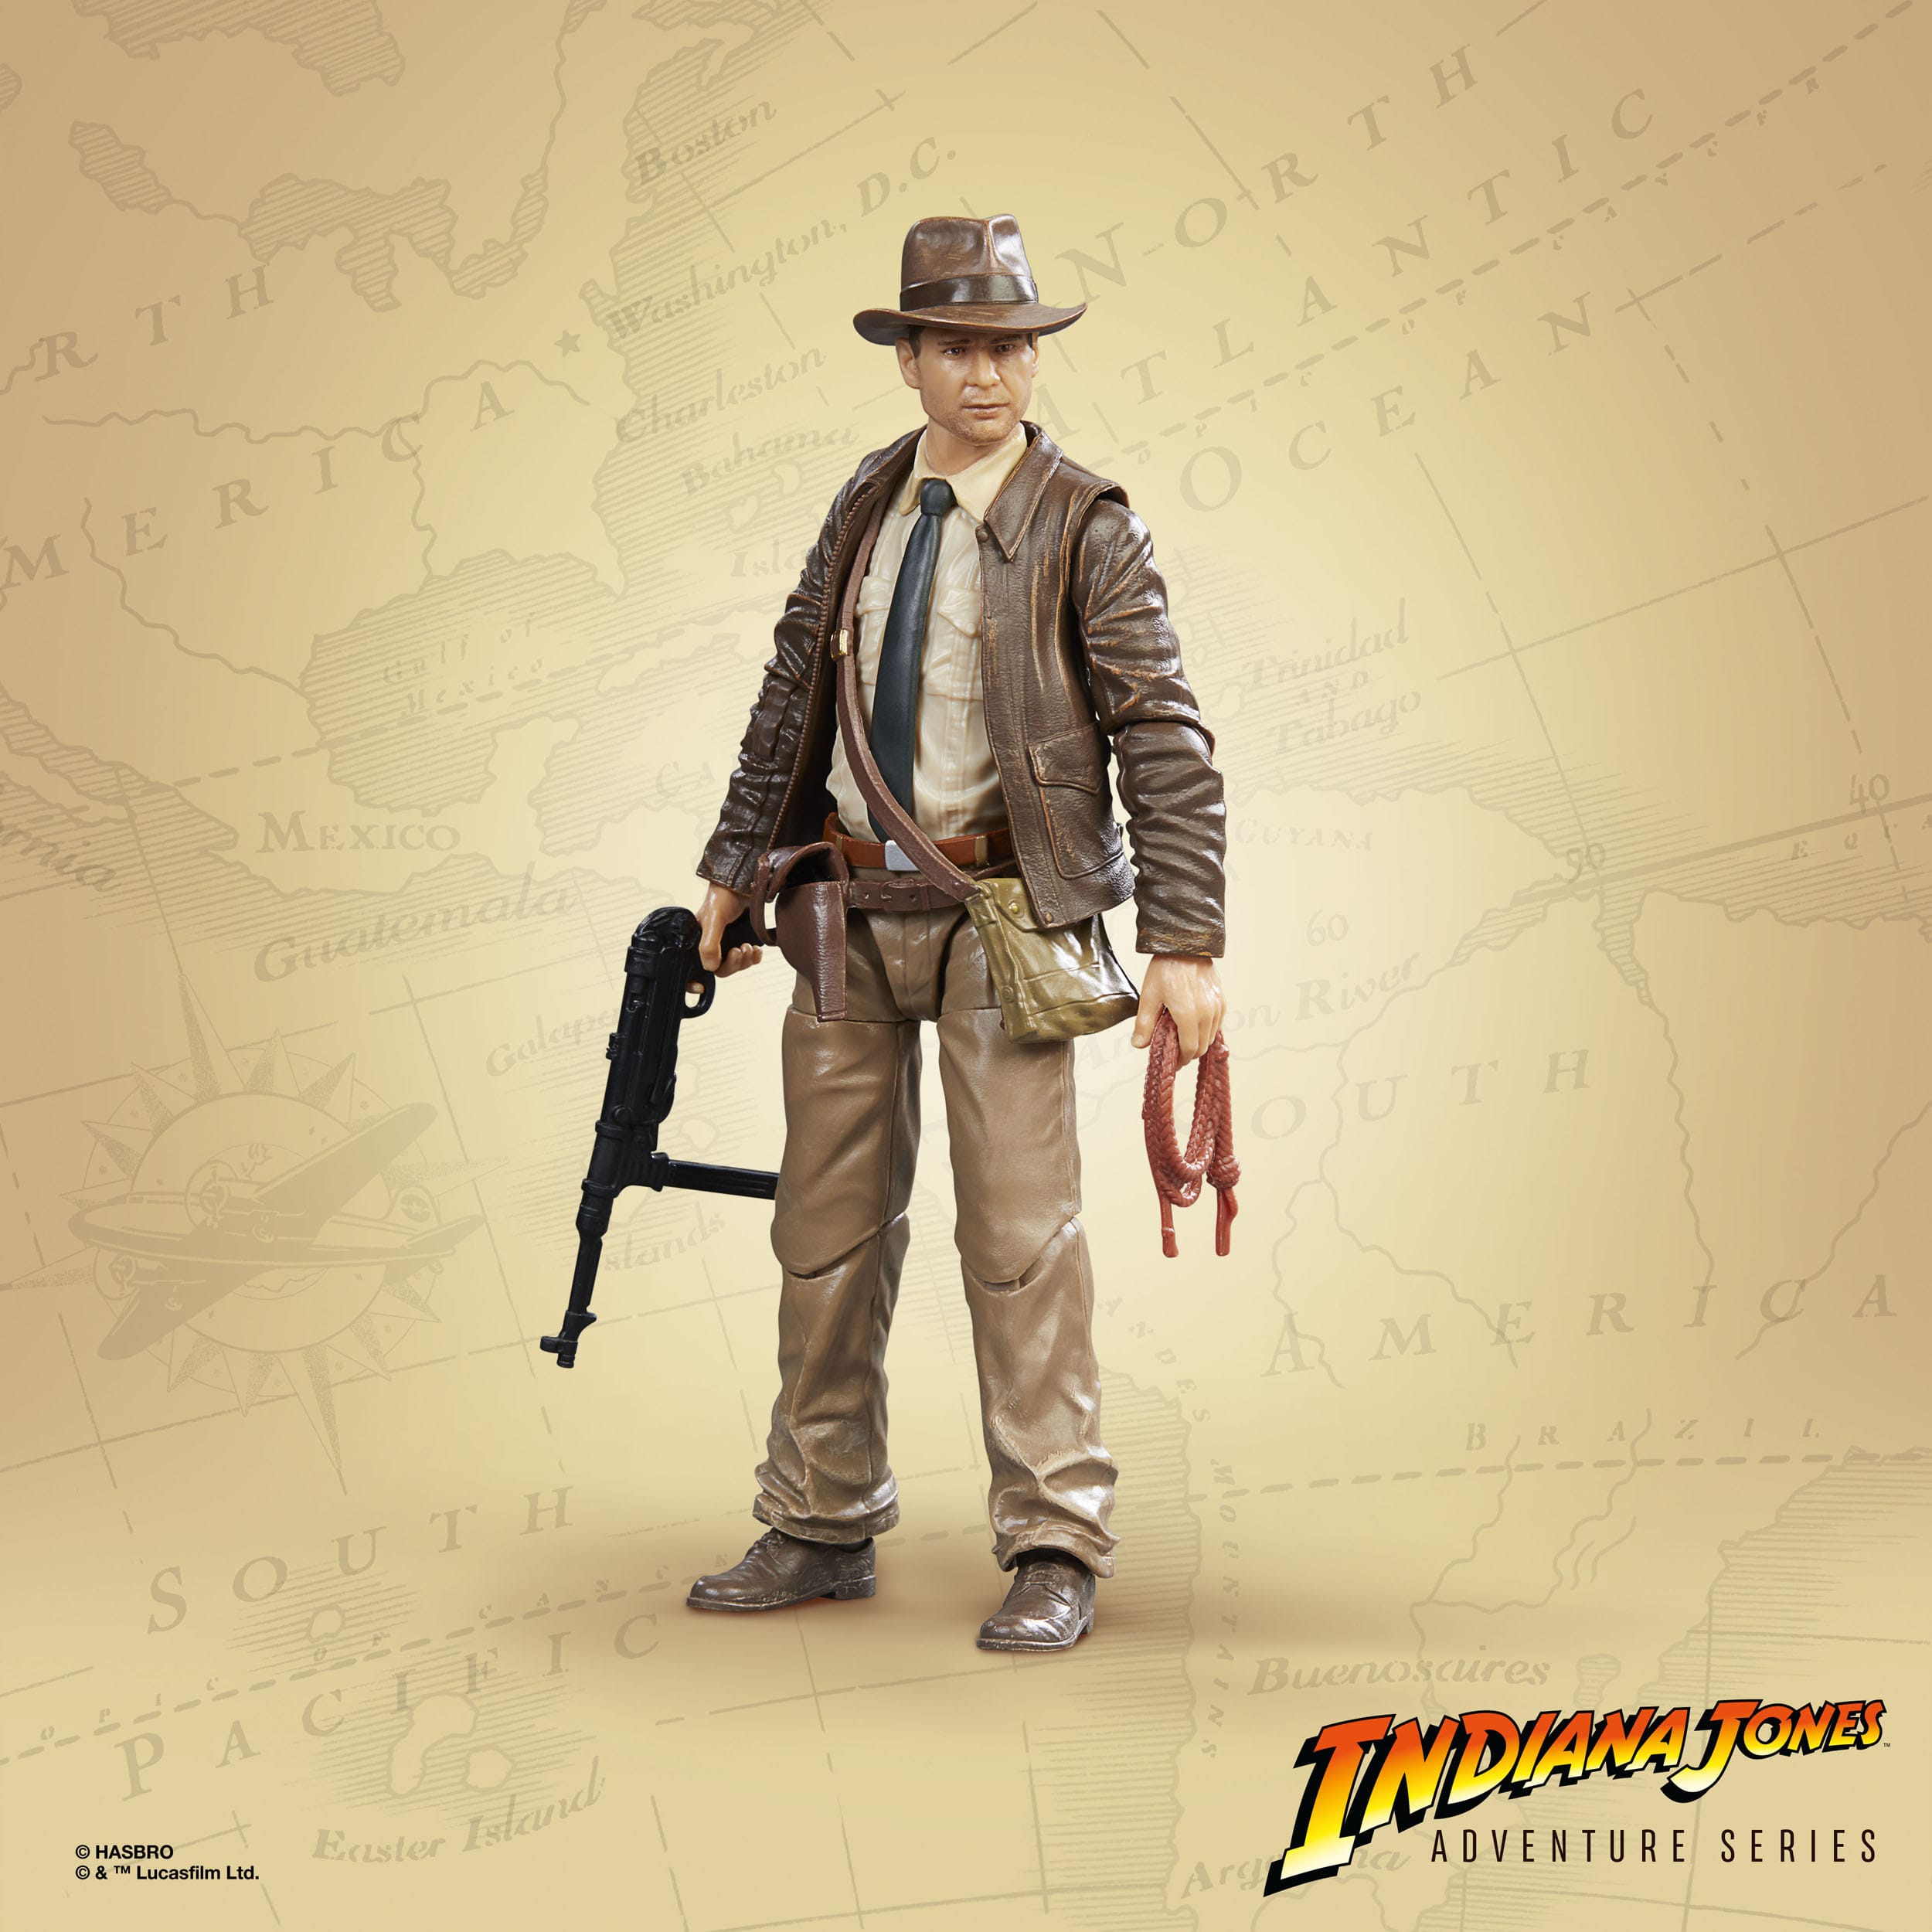  Indiana Jones Adventure Series Actionfigur Indiana Jones (Der letzte Kreuzzug) 15 cm F60705X0 5010994167981